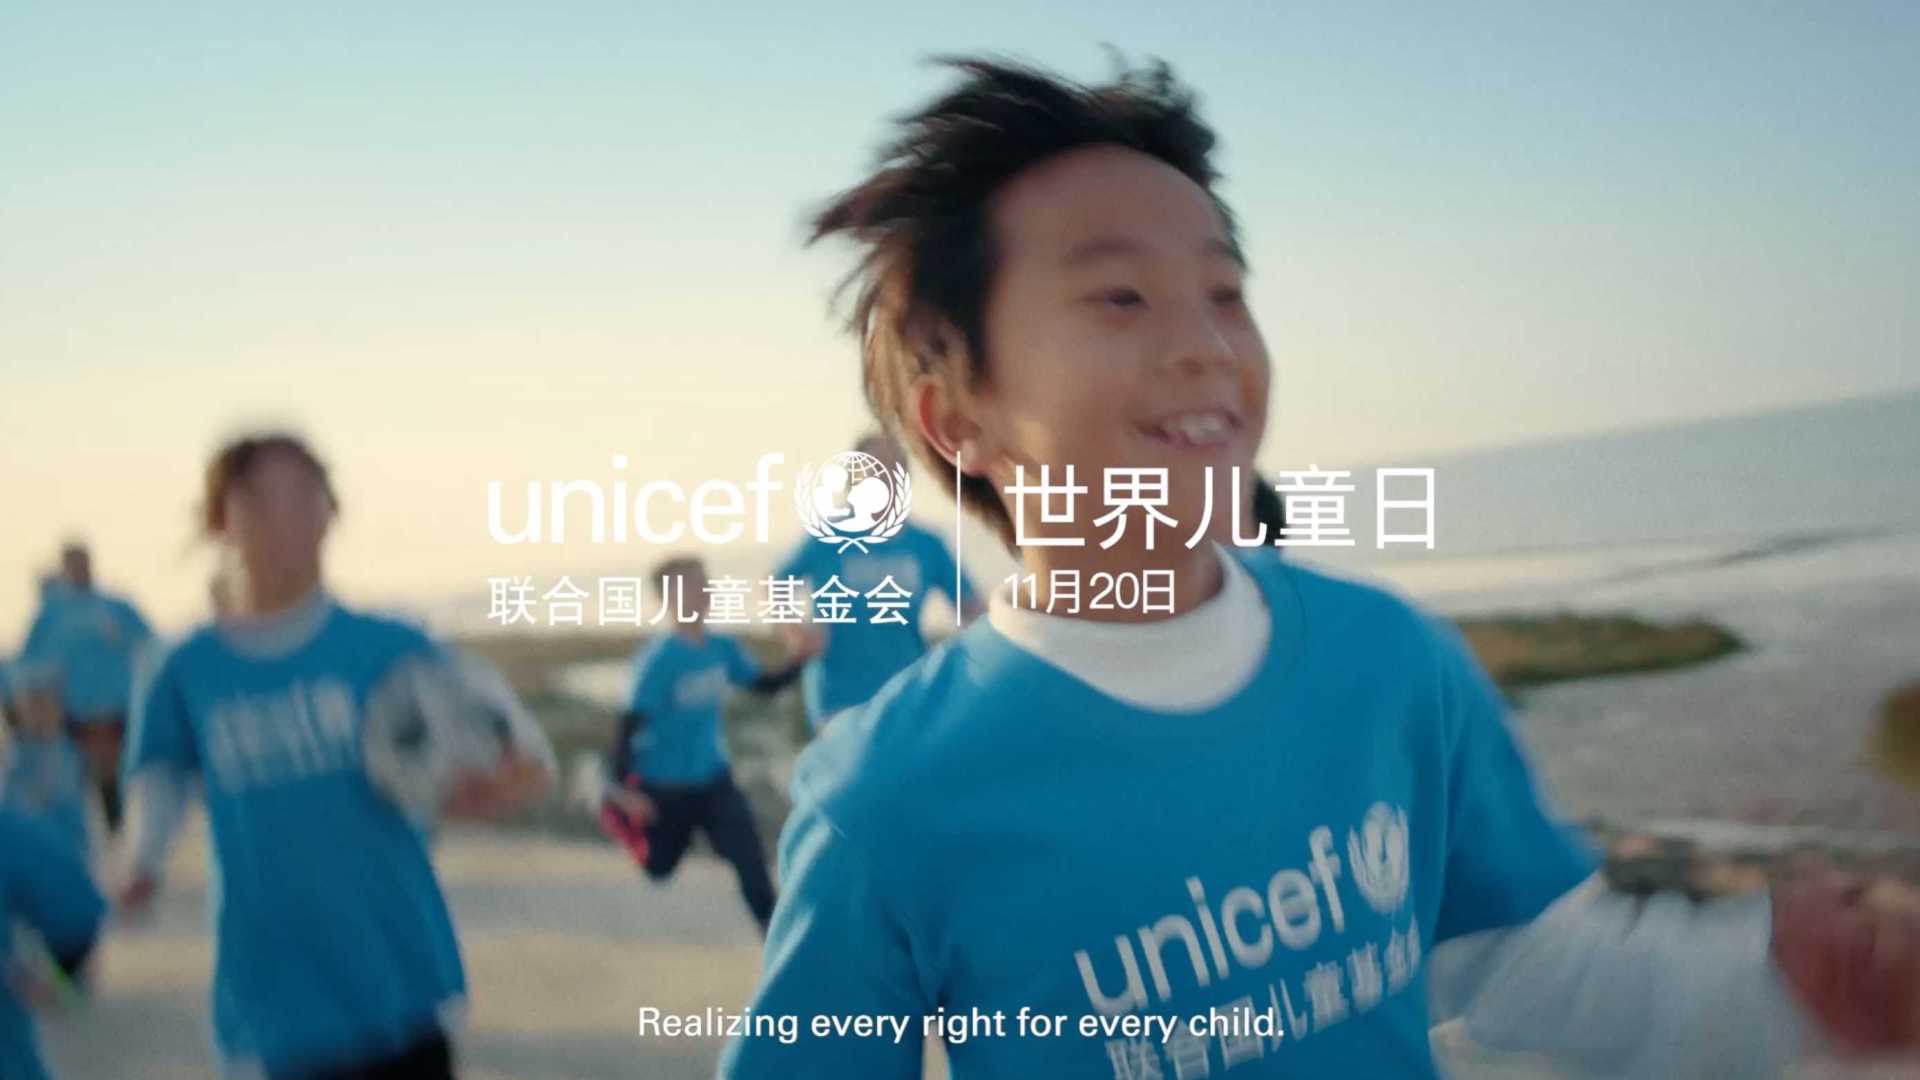 unicef+花絮-1119-en